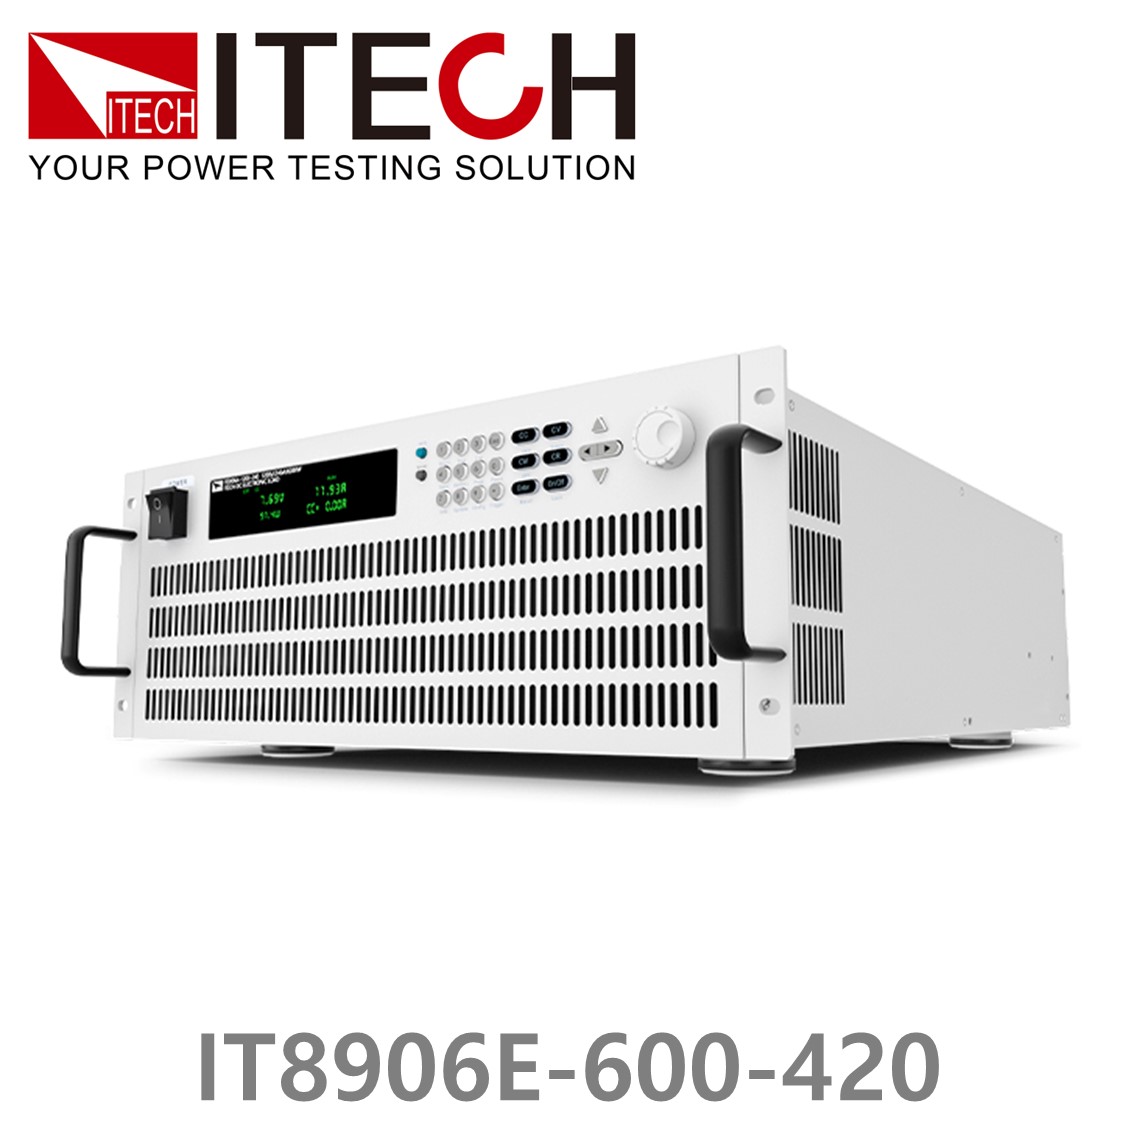 [ ITECH ] IT8906E-600-420  고성능 고전력 DC 전자로드 600V/420A/6kW (4U)